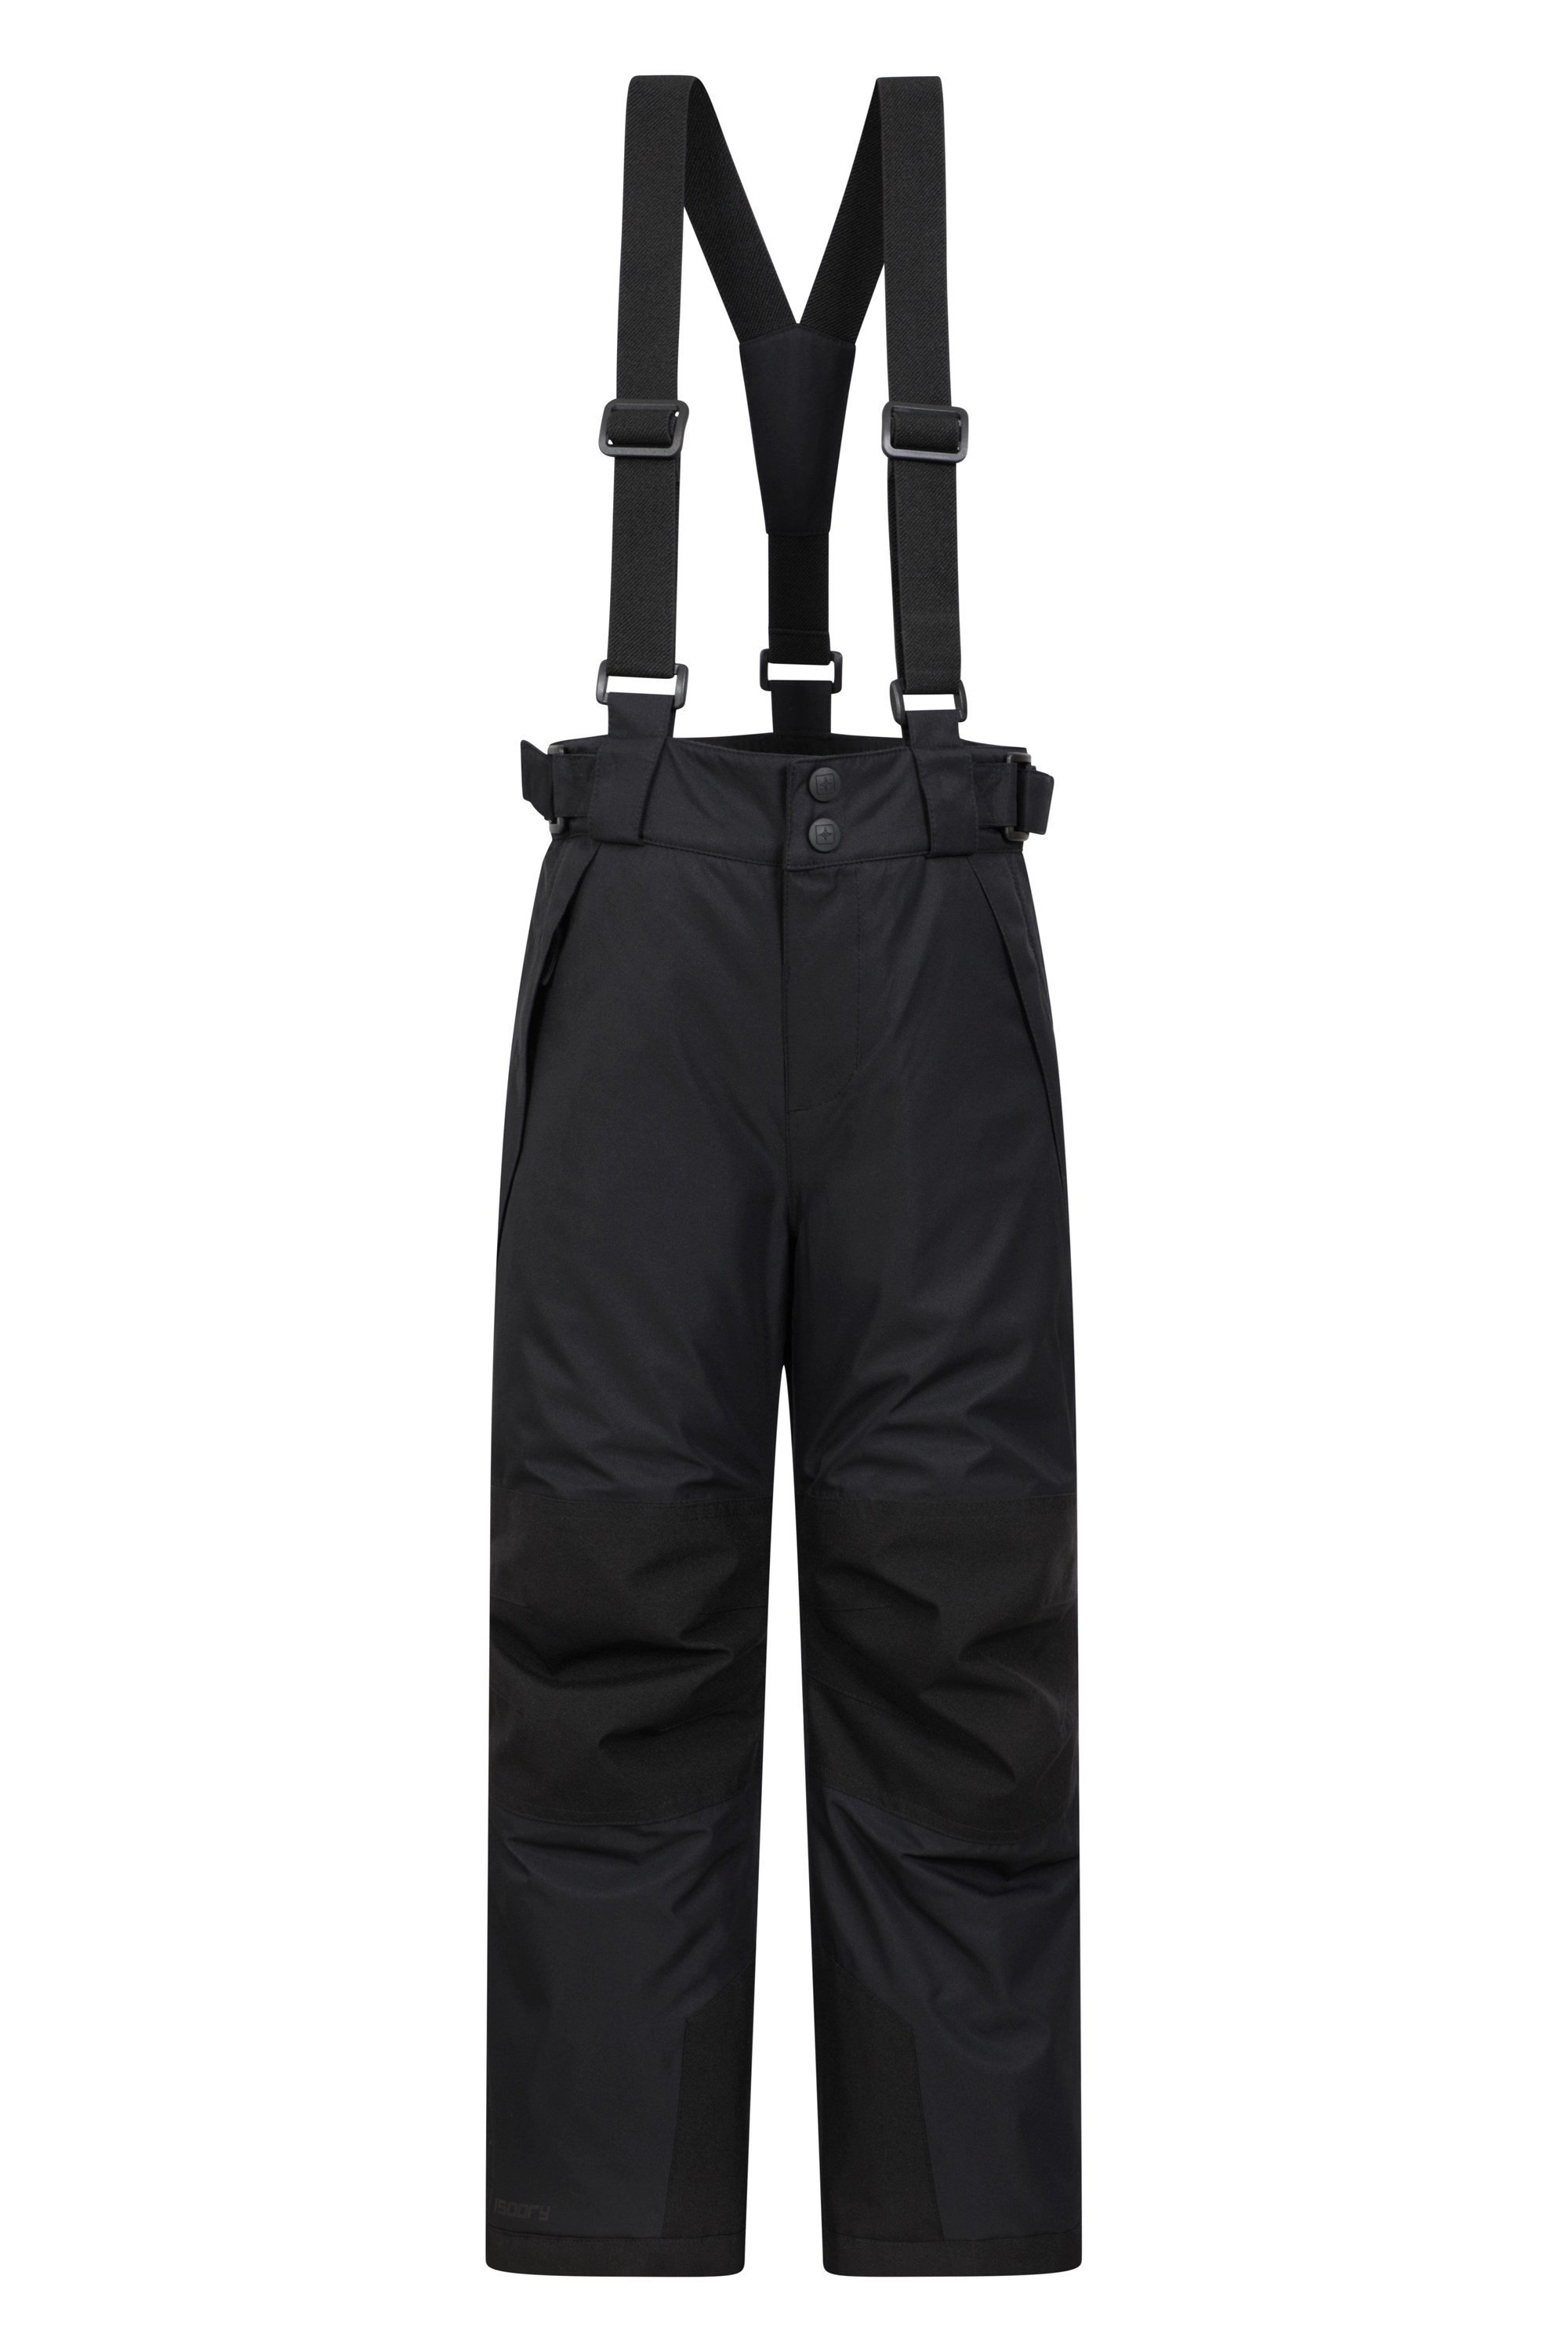 Falcon Extreme Kids Waterproof Ski Pants - Black